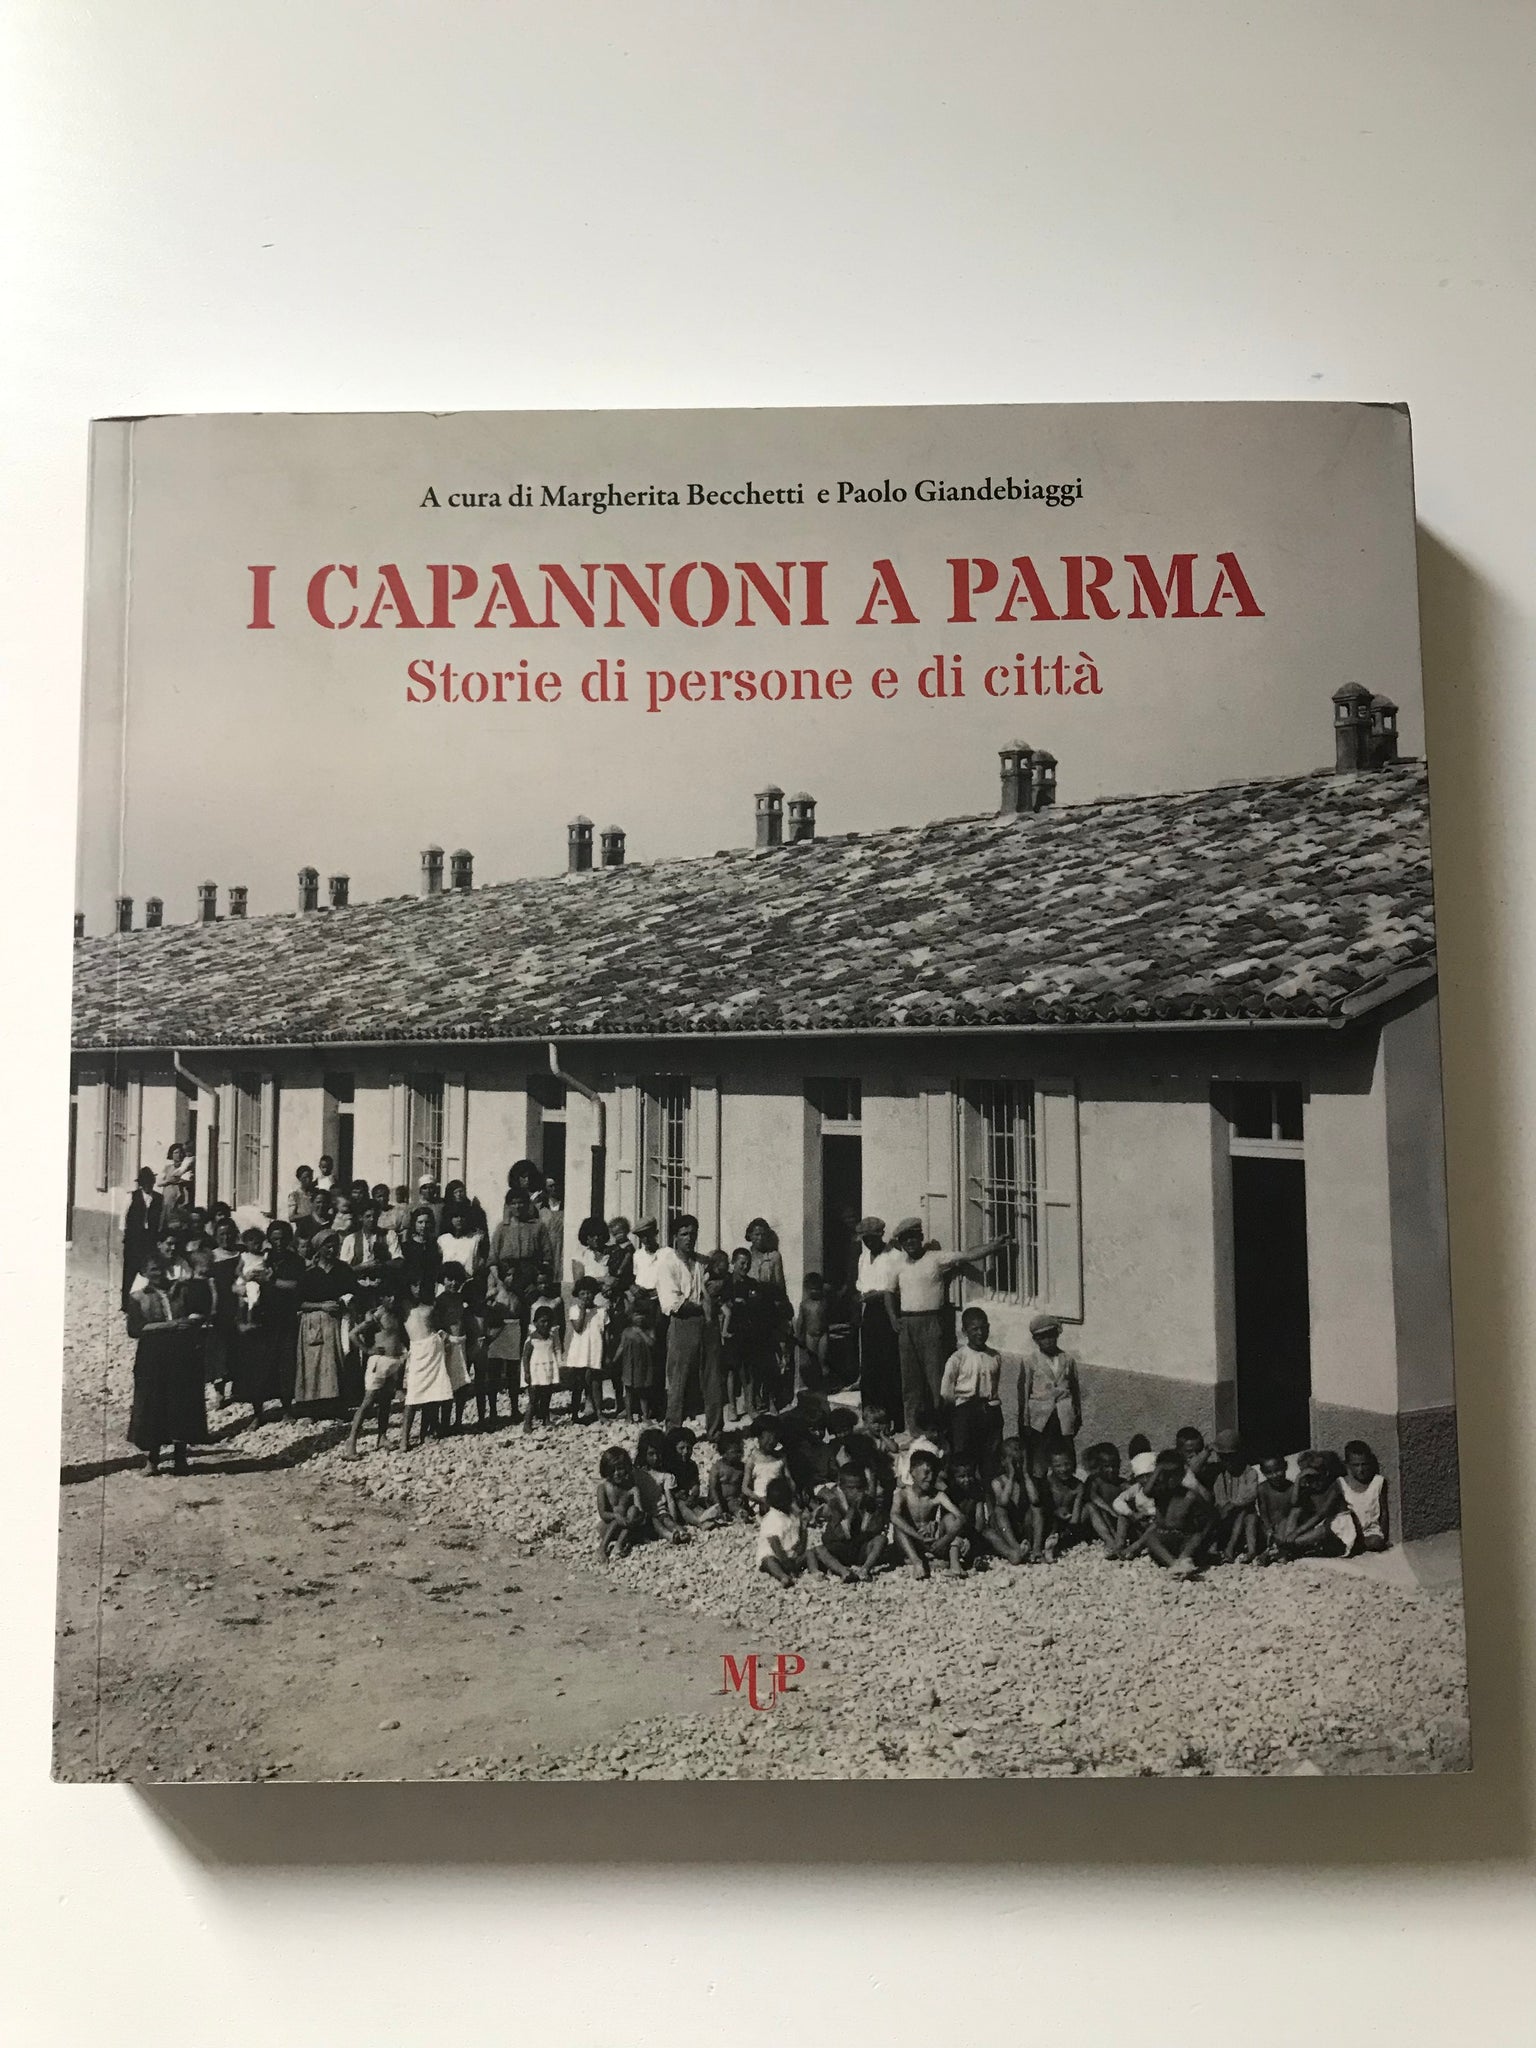 Margherita Becchetti e Paolo Giandebiaggi, a cura di - I Capannoni a Parma Storia di persone e di città